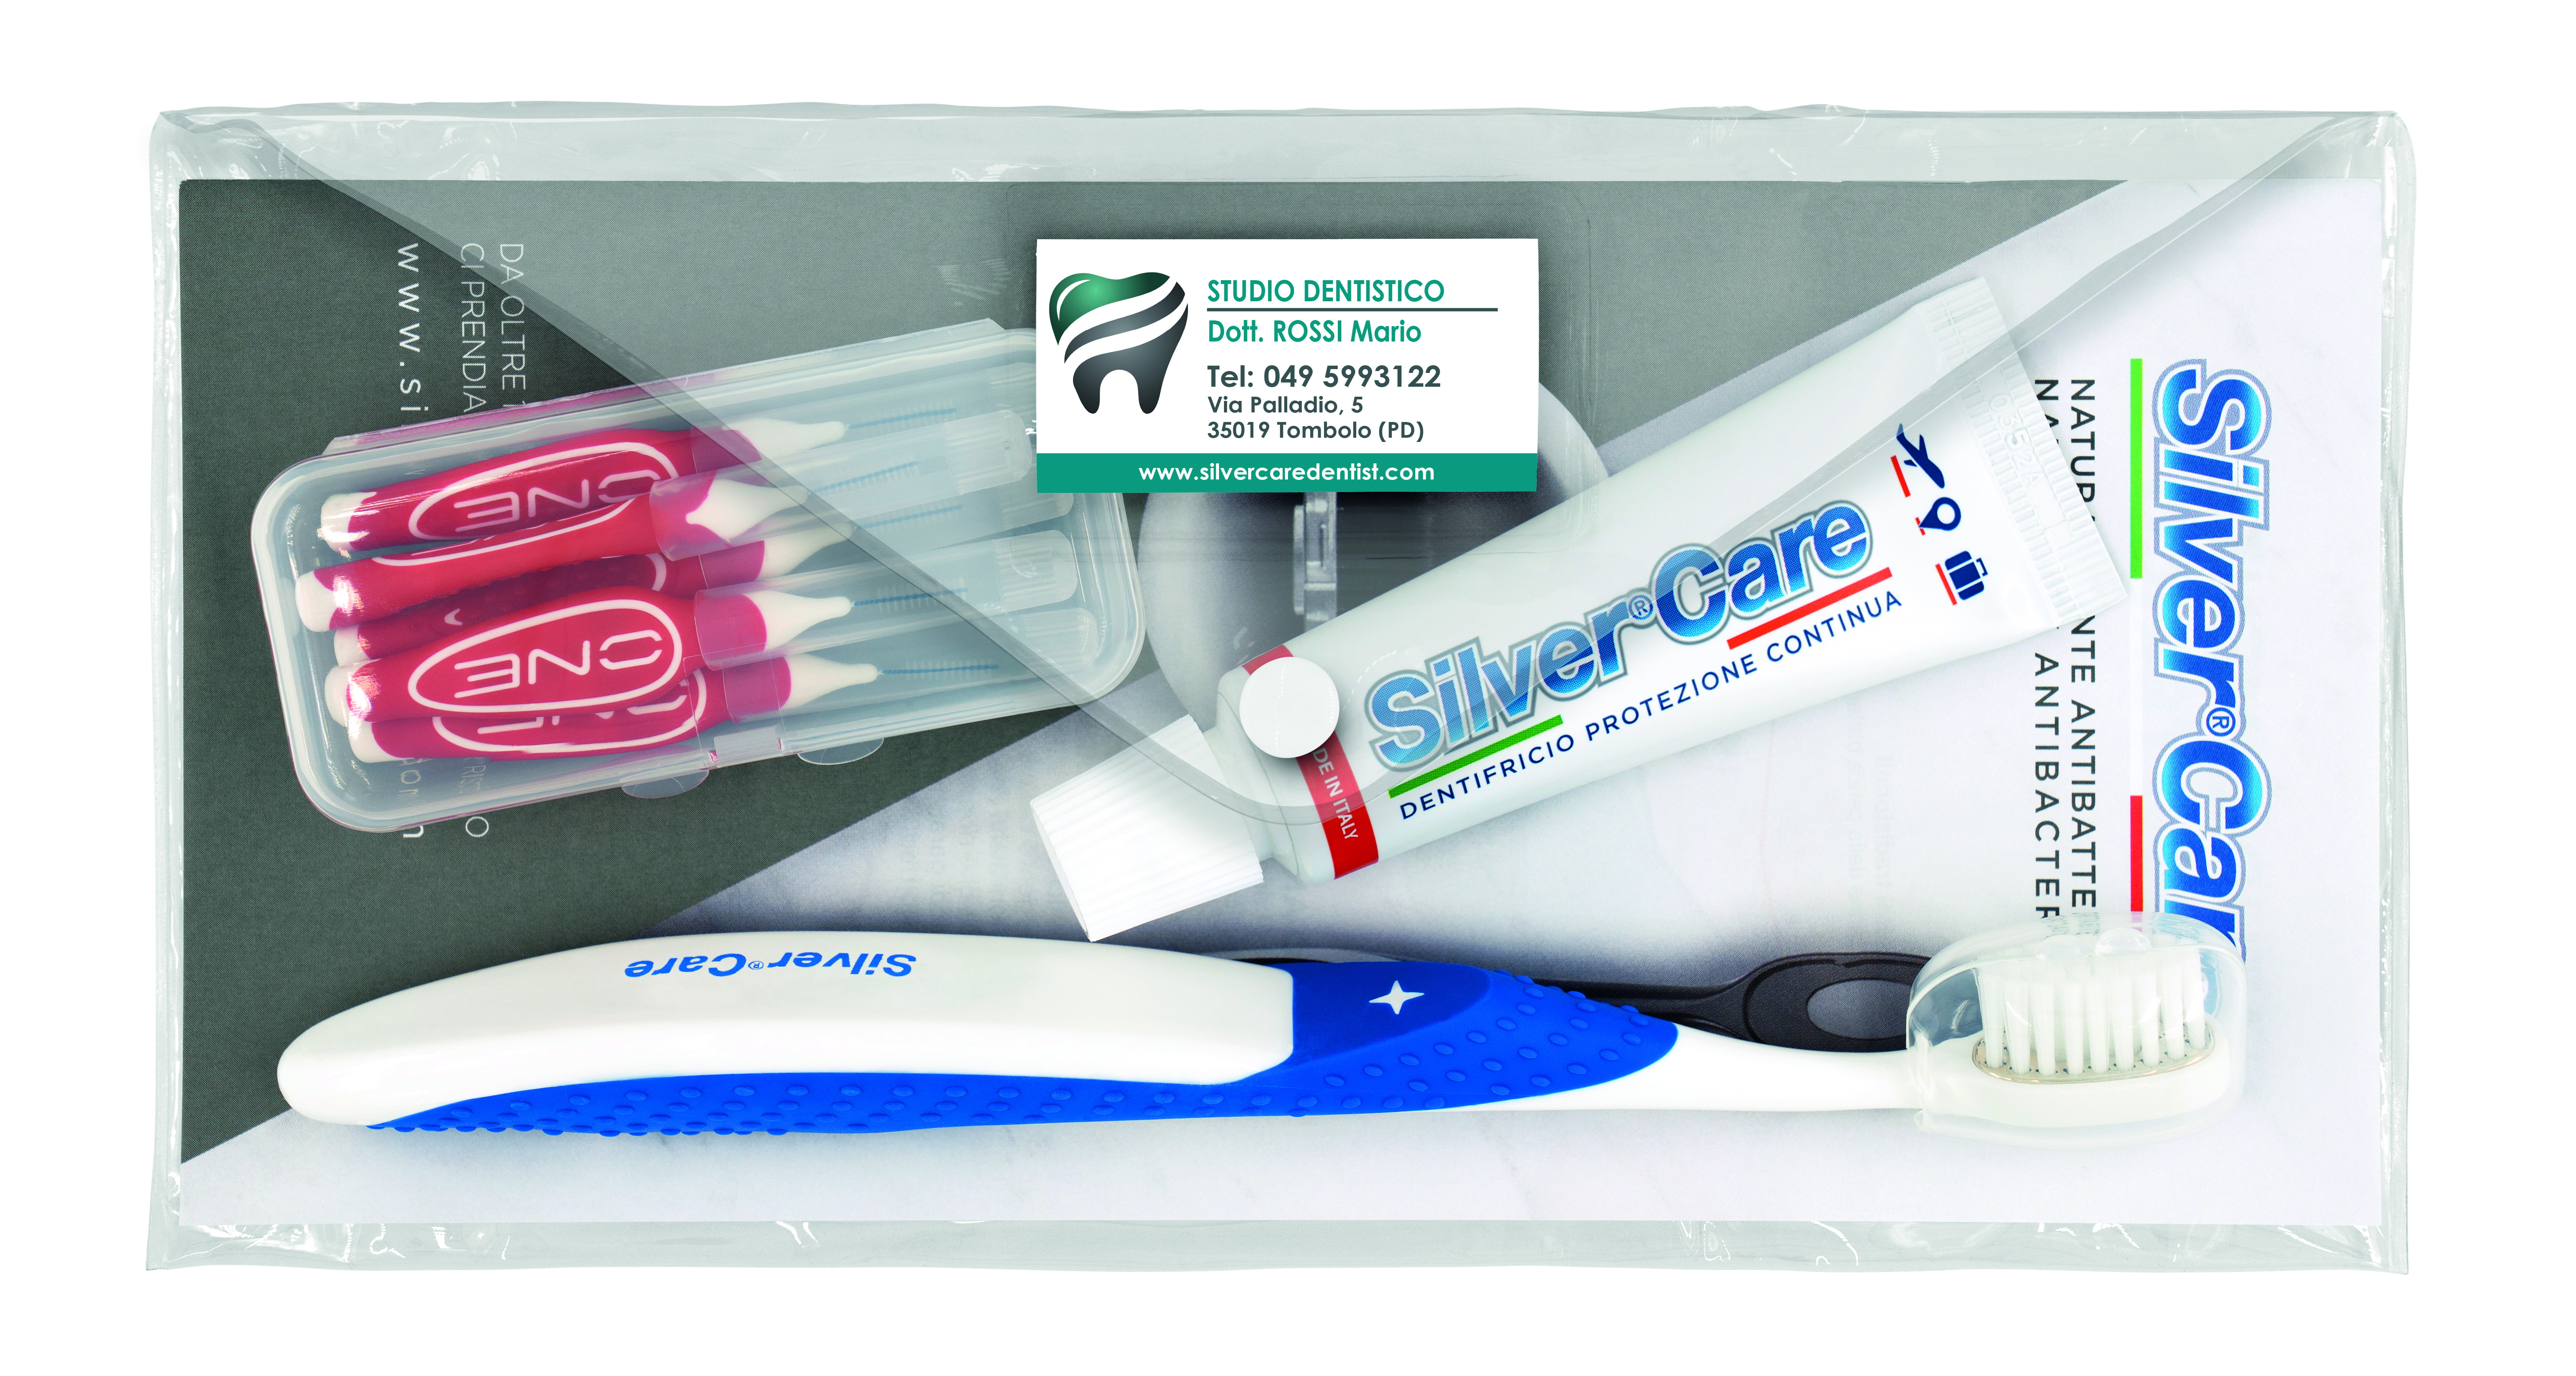 Profilassi - Buste Silver Care Ortodontico 30 pz